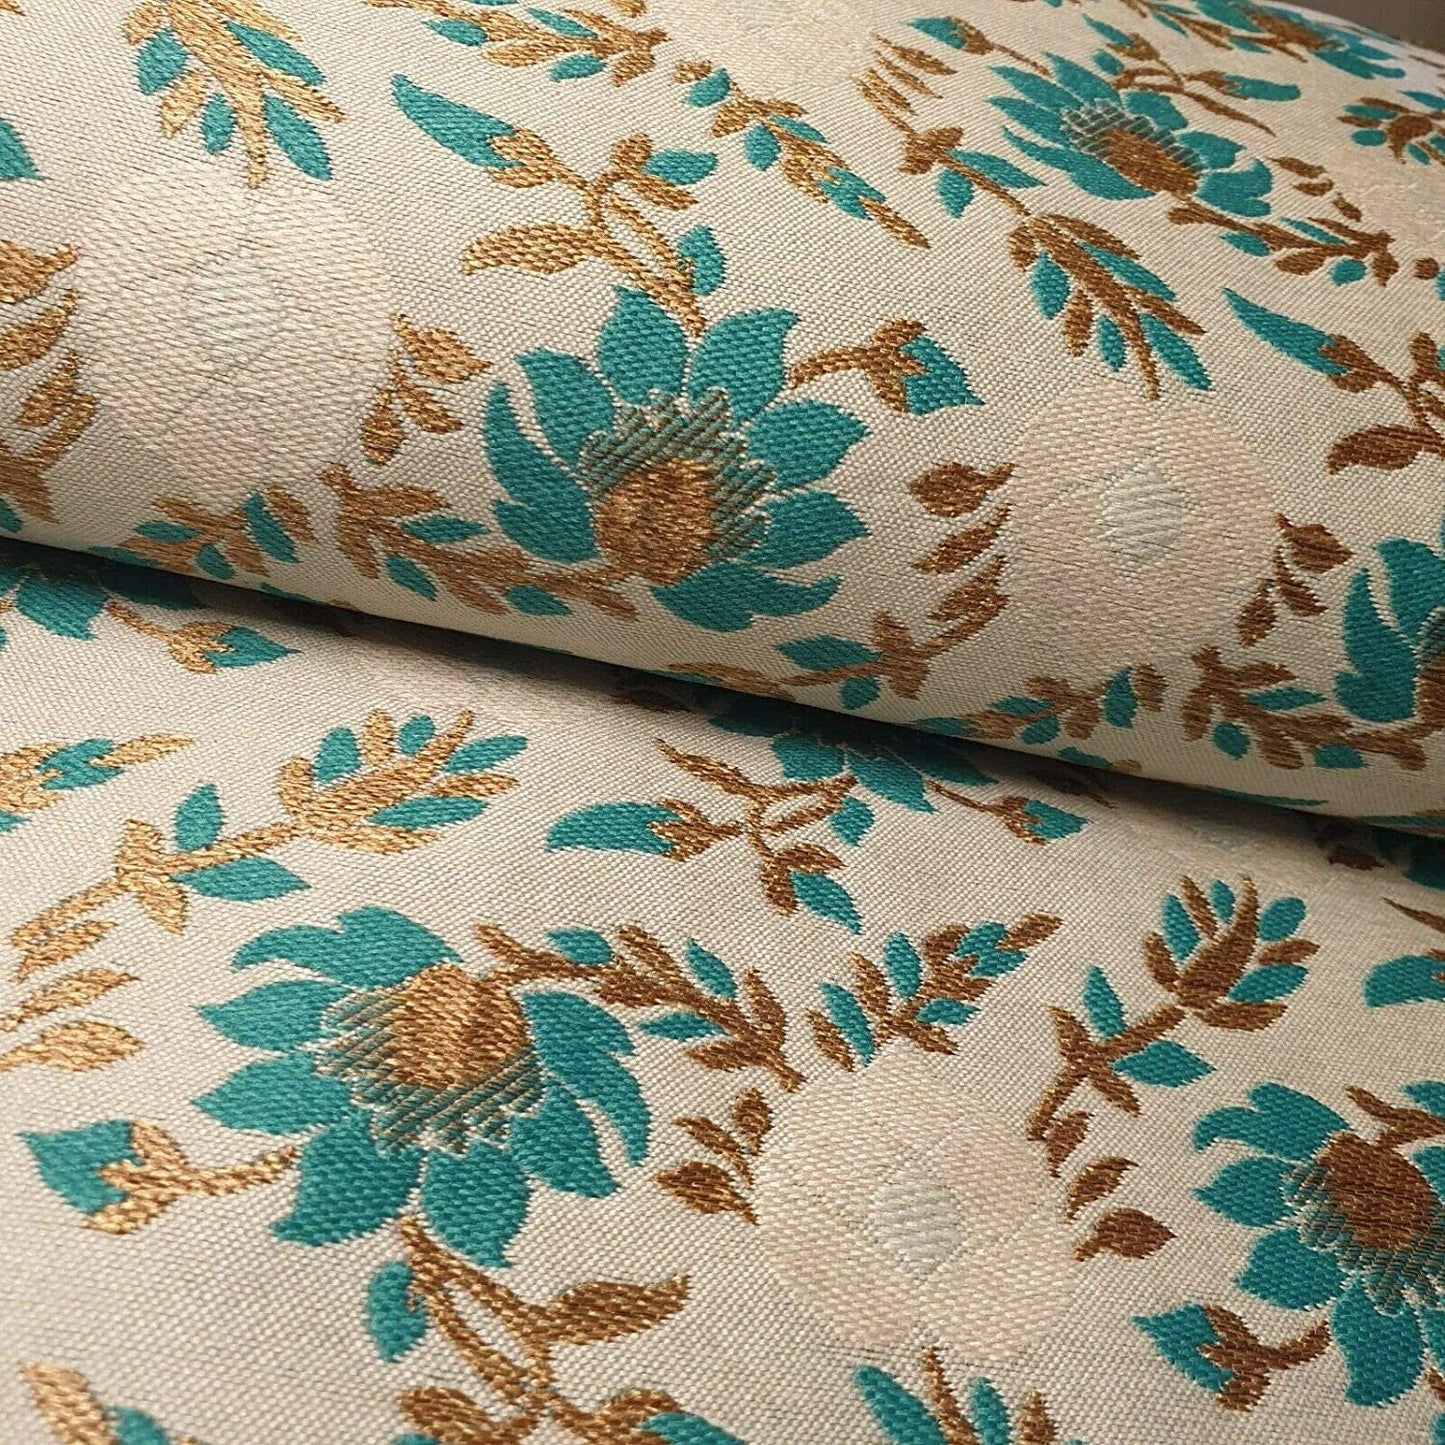 Indian Brocade Banarasi Jacquard Upholstery Craft Cushion Dress Fabric 44" (Beige Base with Turquoise Flowers)